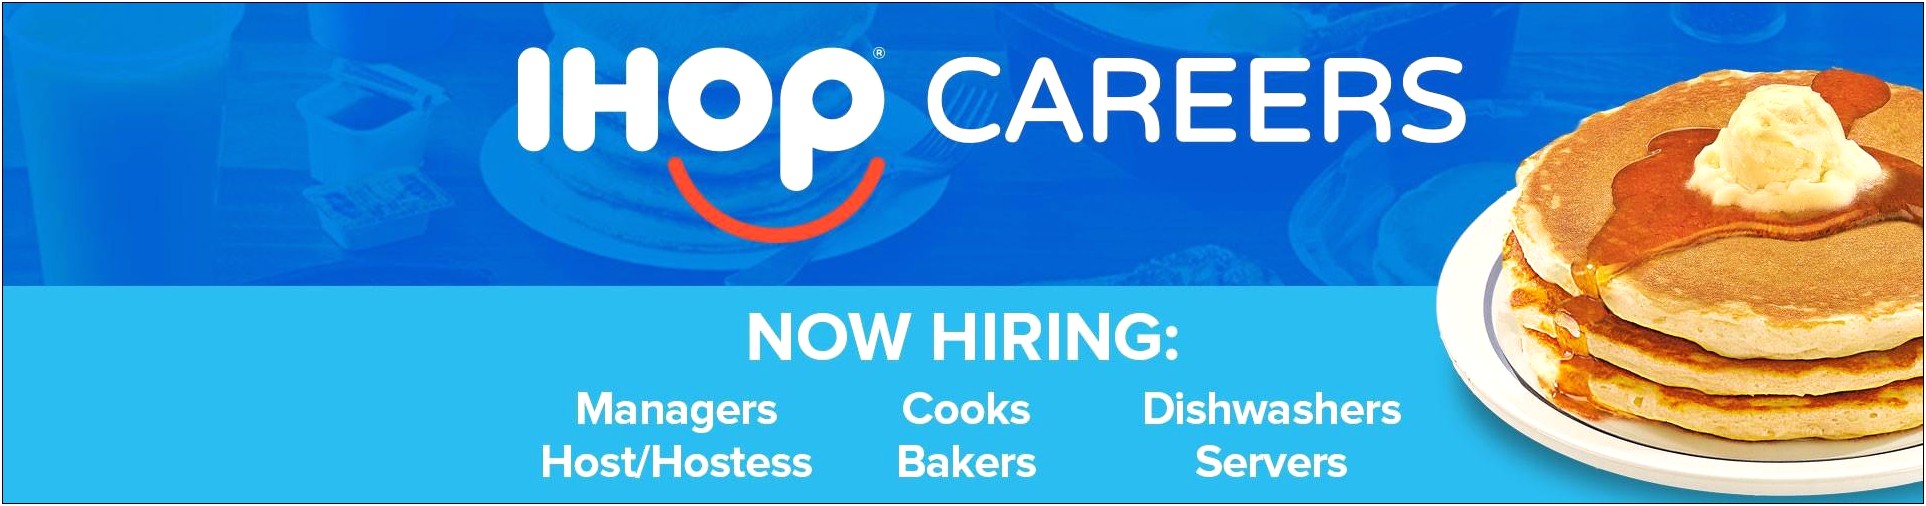 Ihop Cook Job Description For Resume